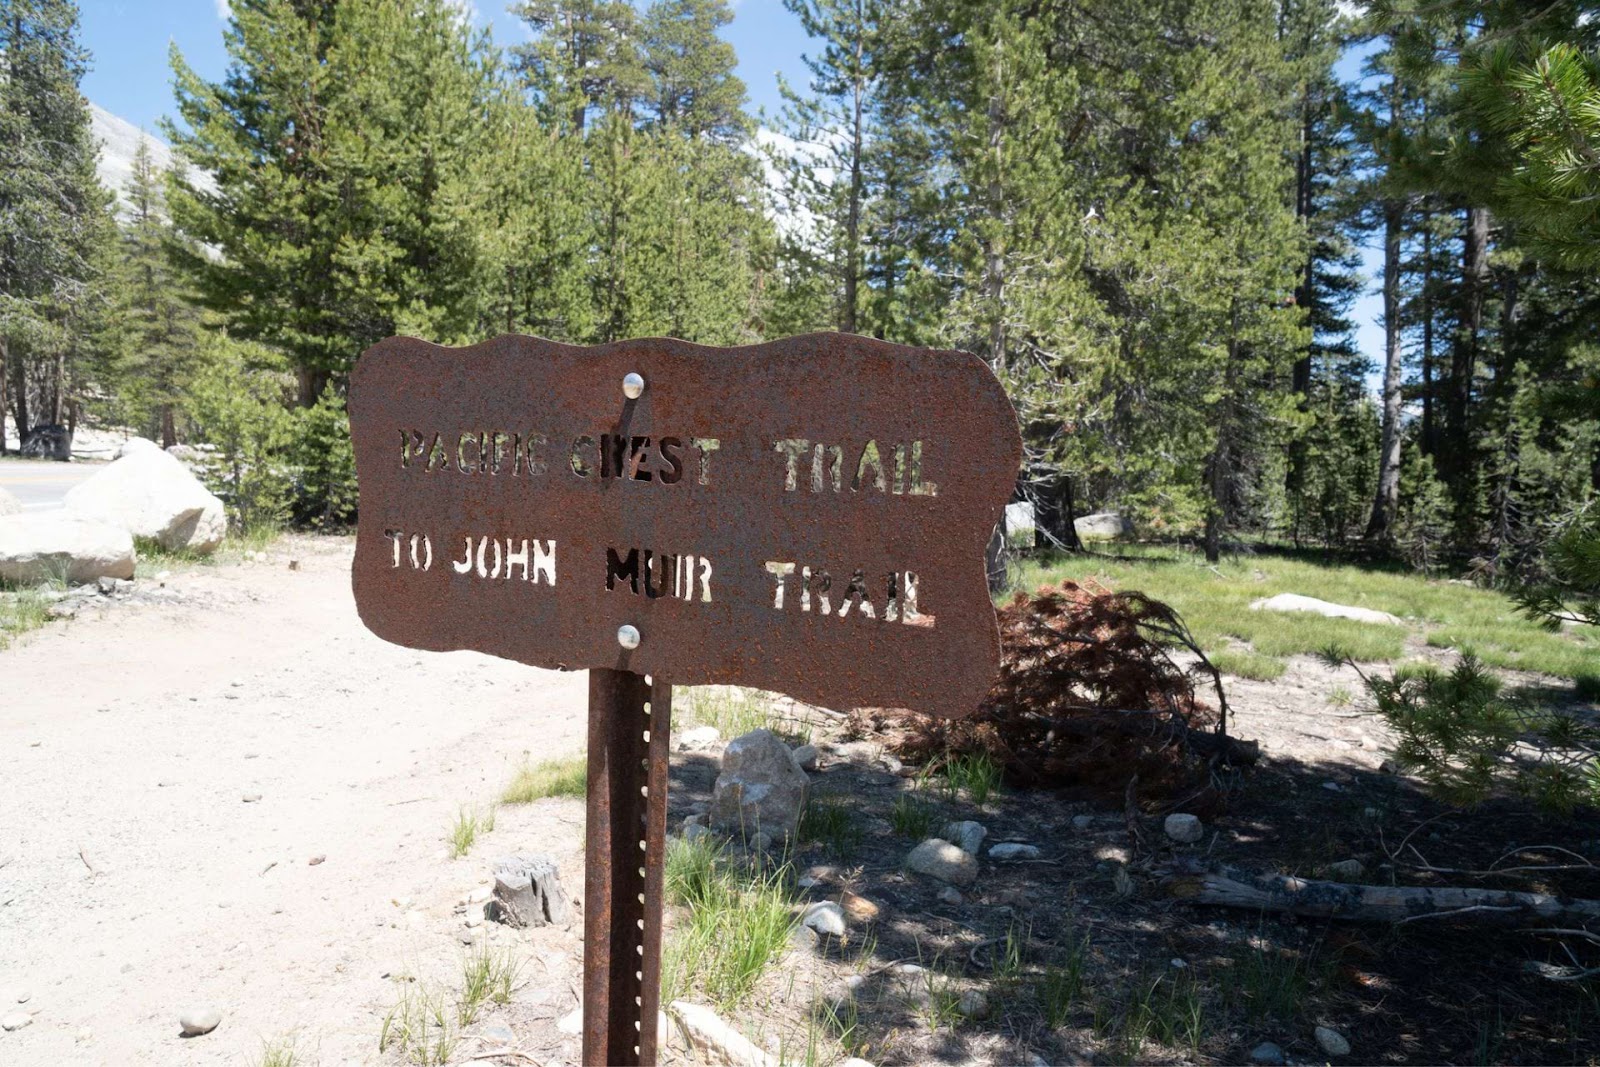 John Muir Trail sign